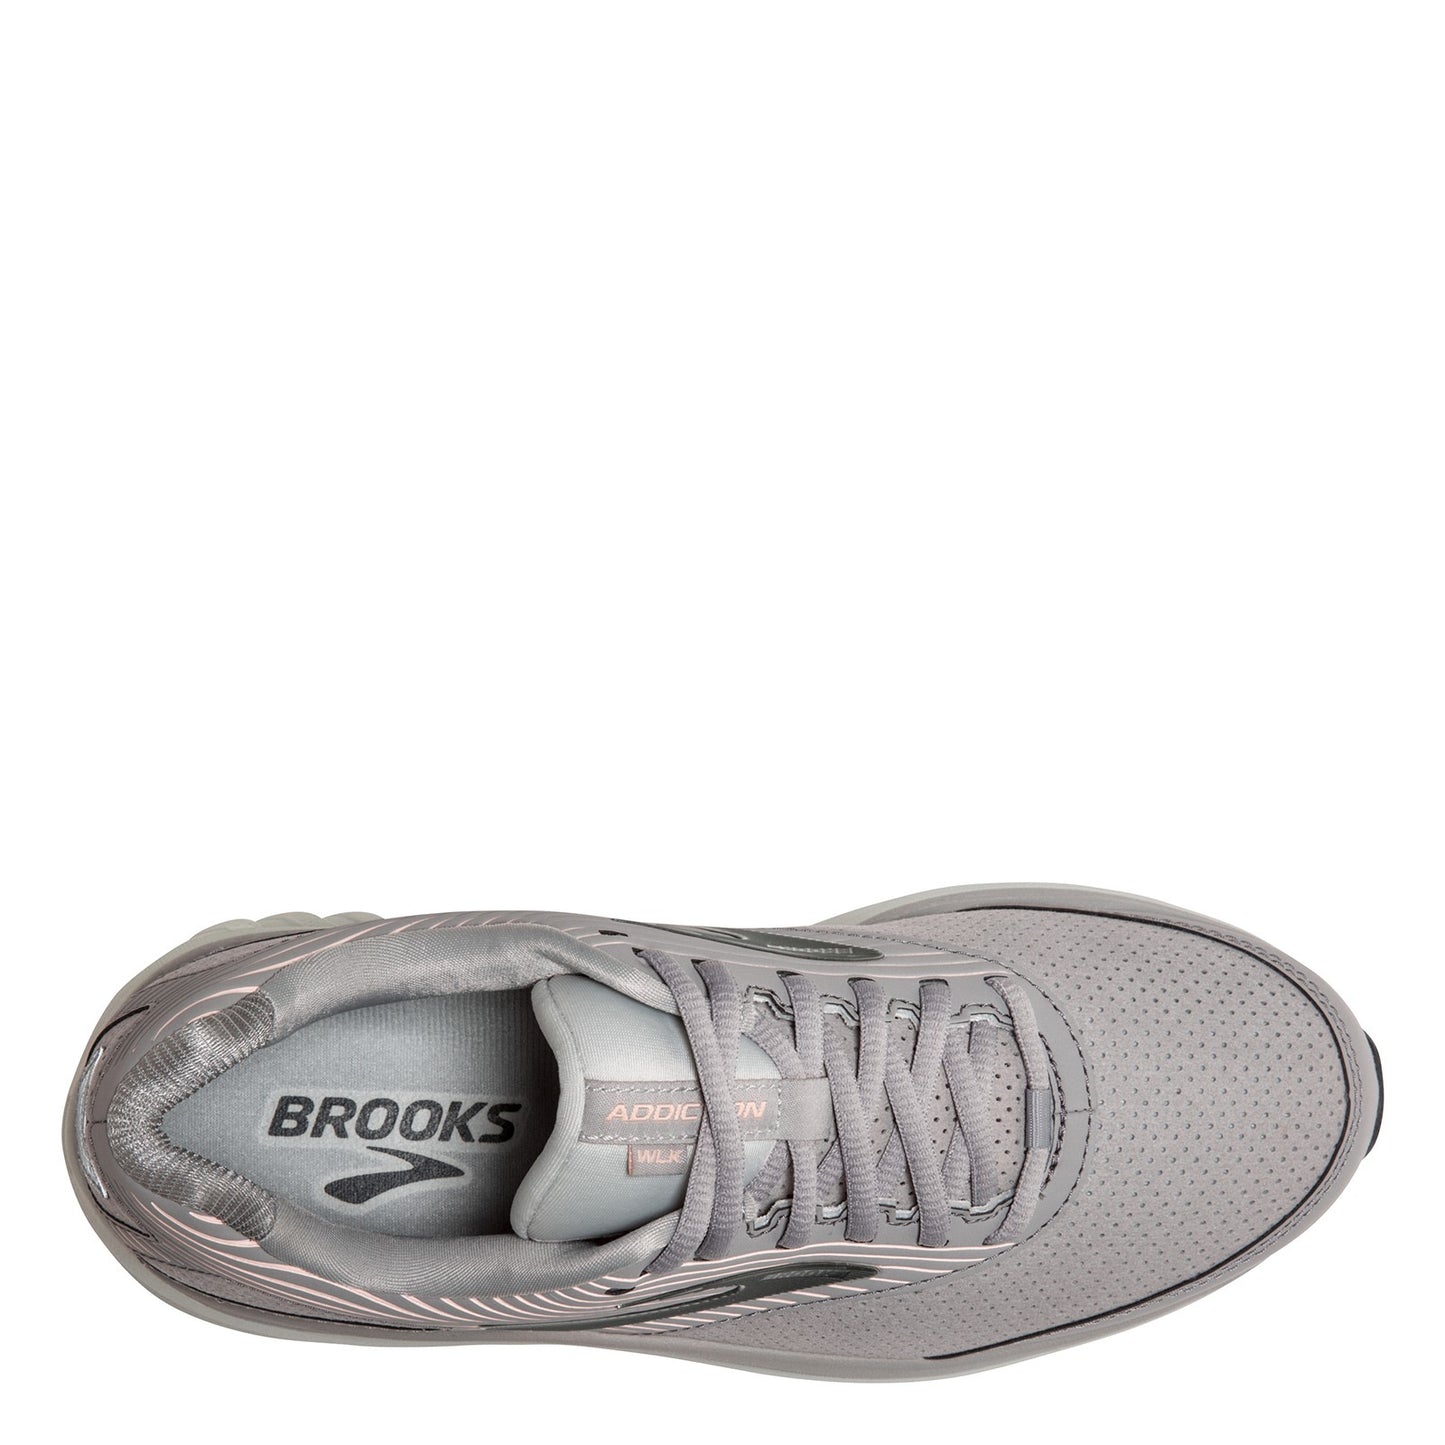 Peltz Shoes  Women's Brooks Addiction Walker 2 Walking Shoe - Wide Width Alloy/Oyster 120308 1D 007